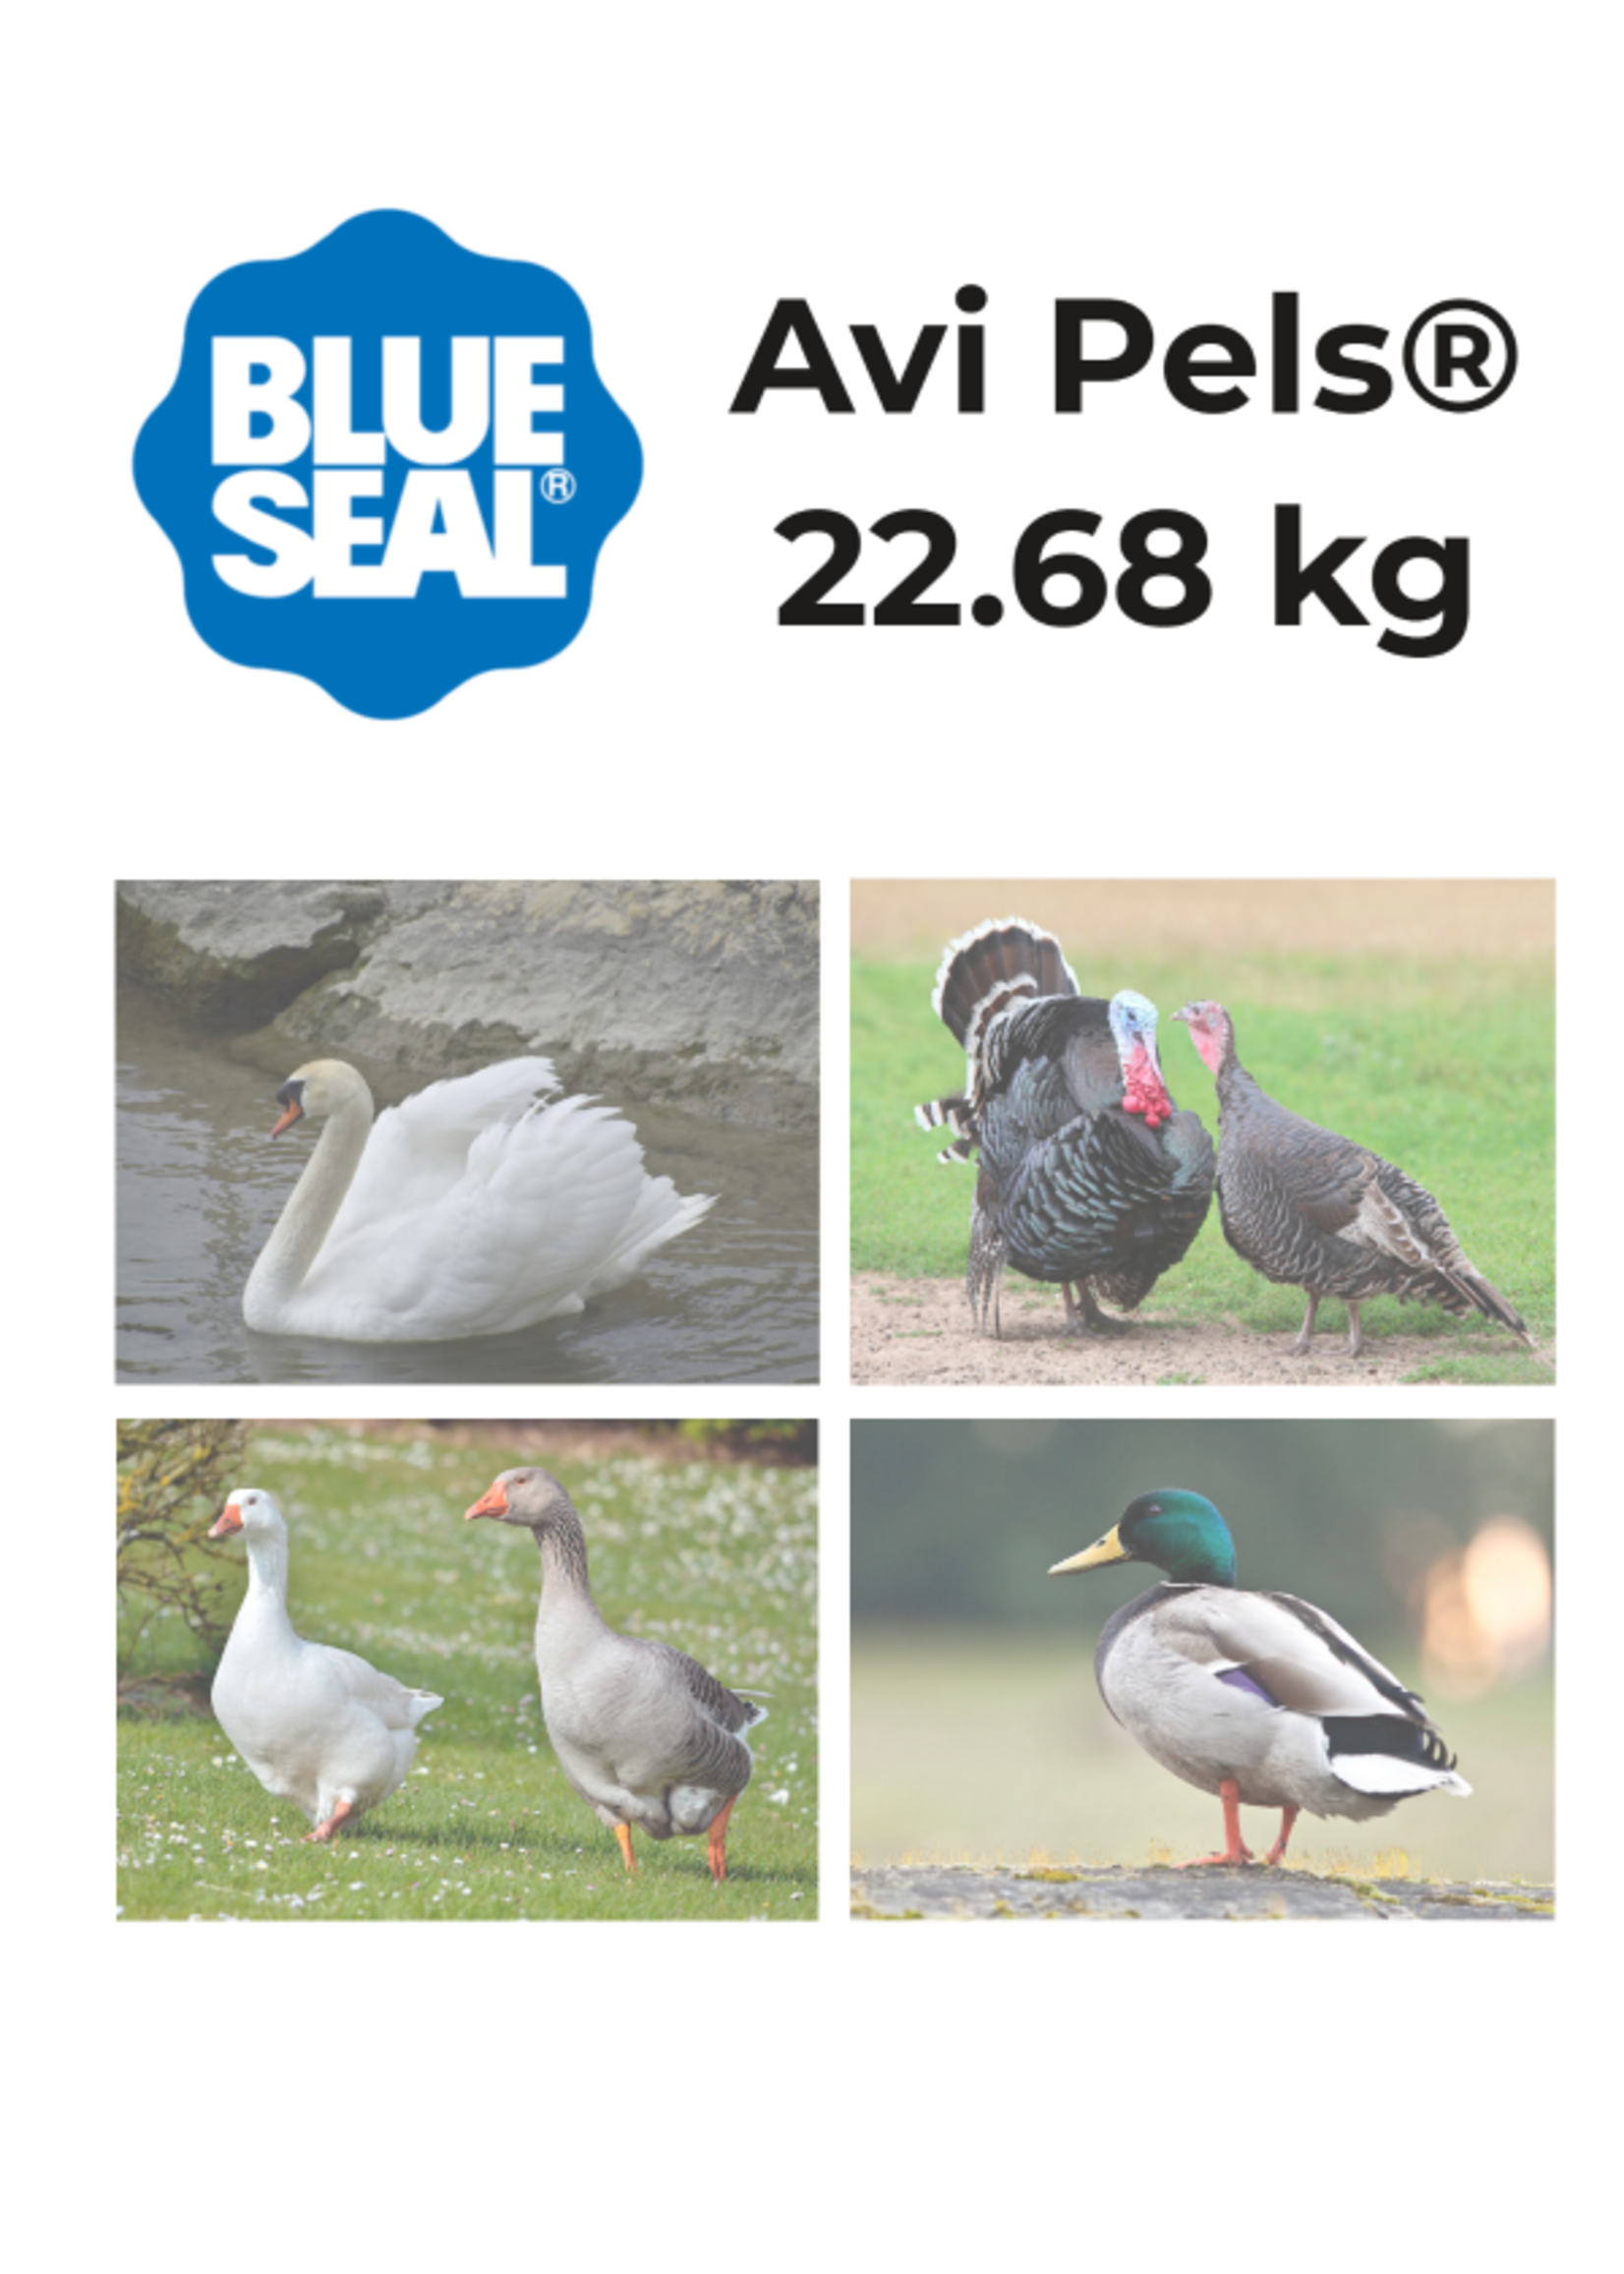 Blue Seal Blue Seal Avi Pels 22.68 kg